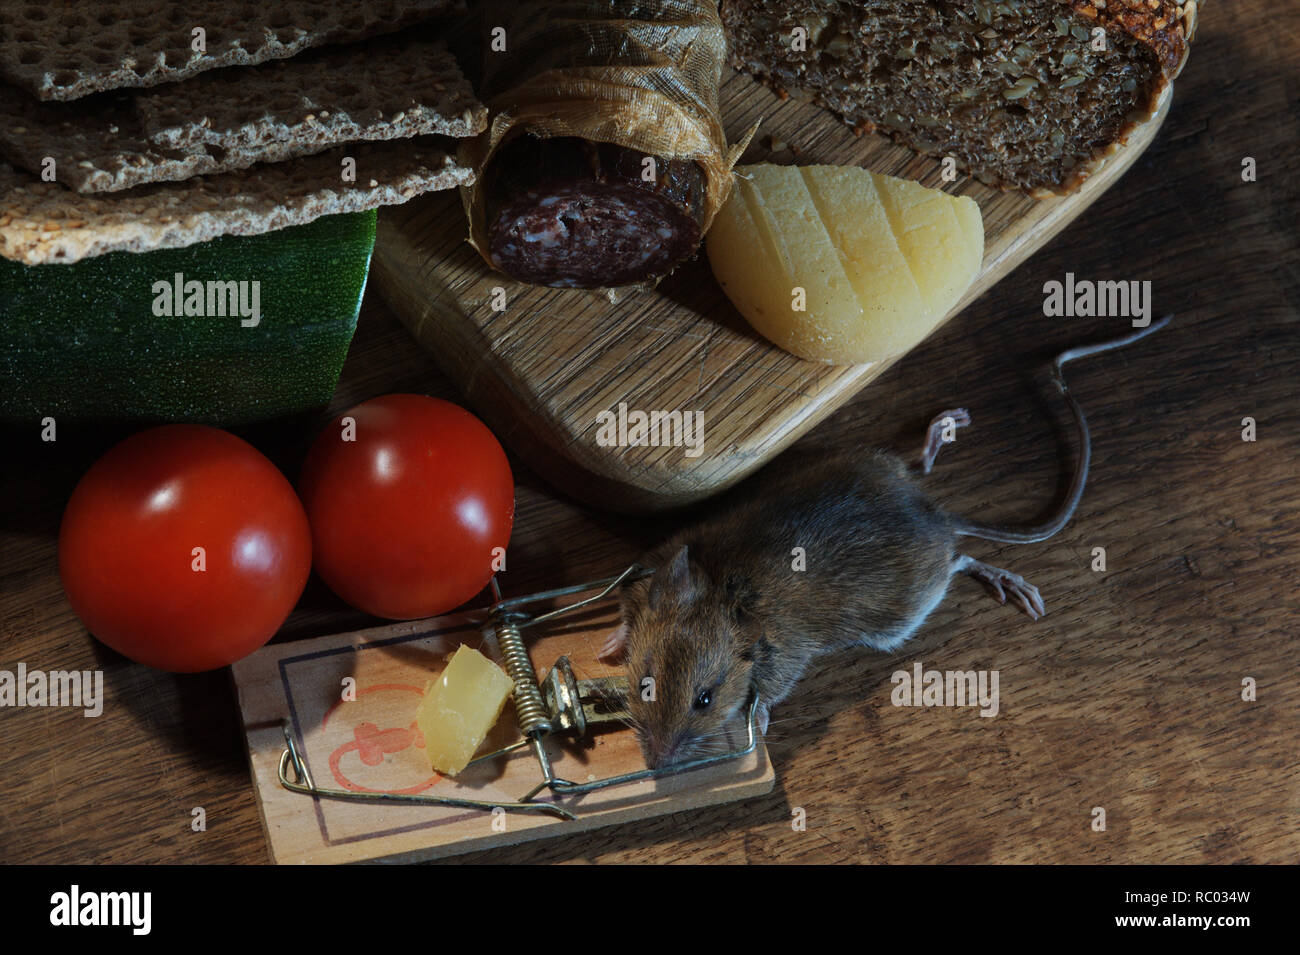 Maus in der Mausefalle gefangen | ratón atrapado en una trampa de ratón Foto de stock